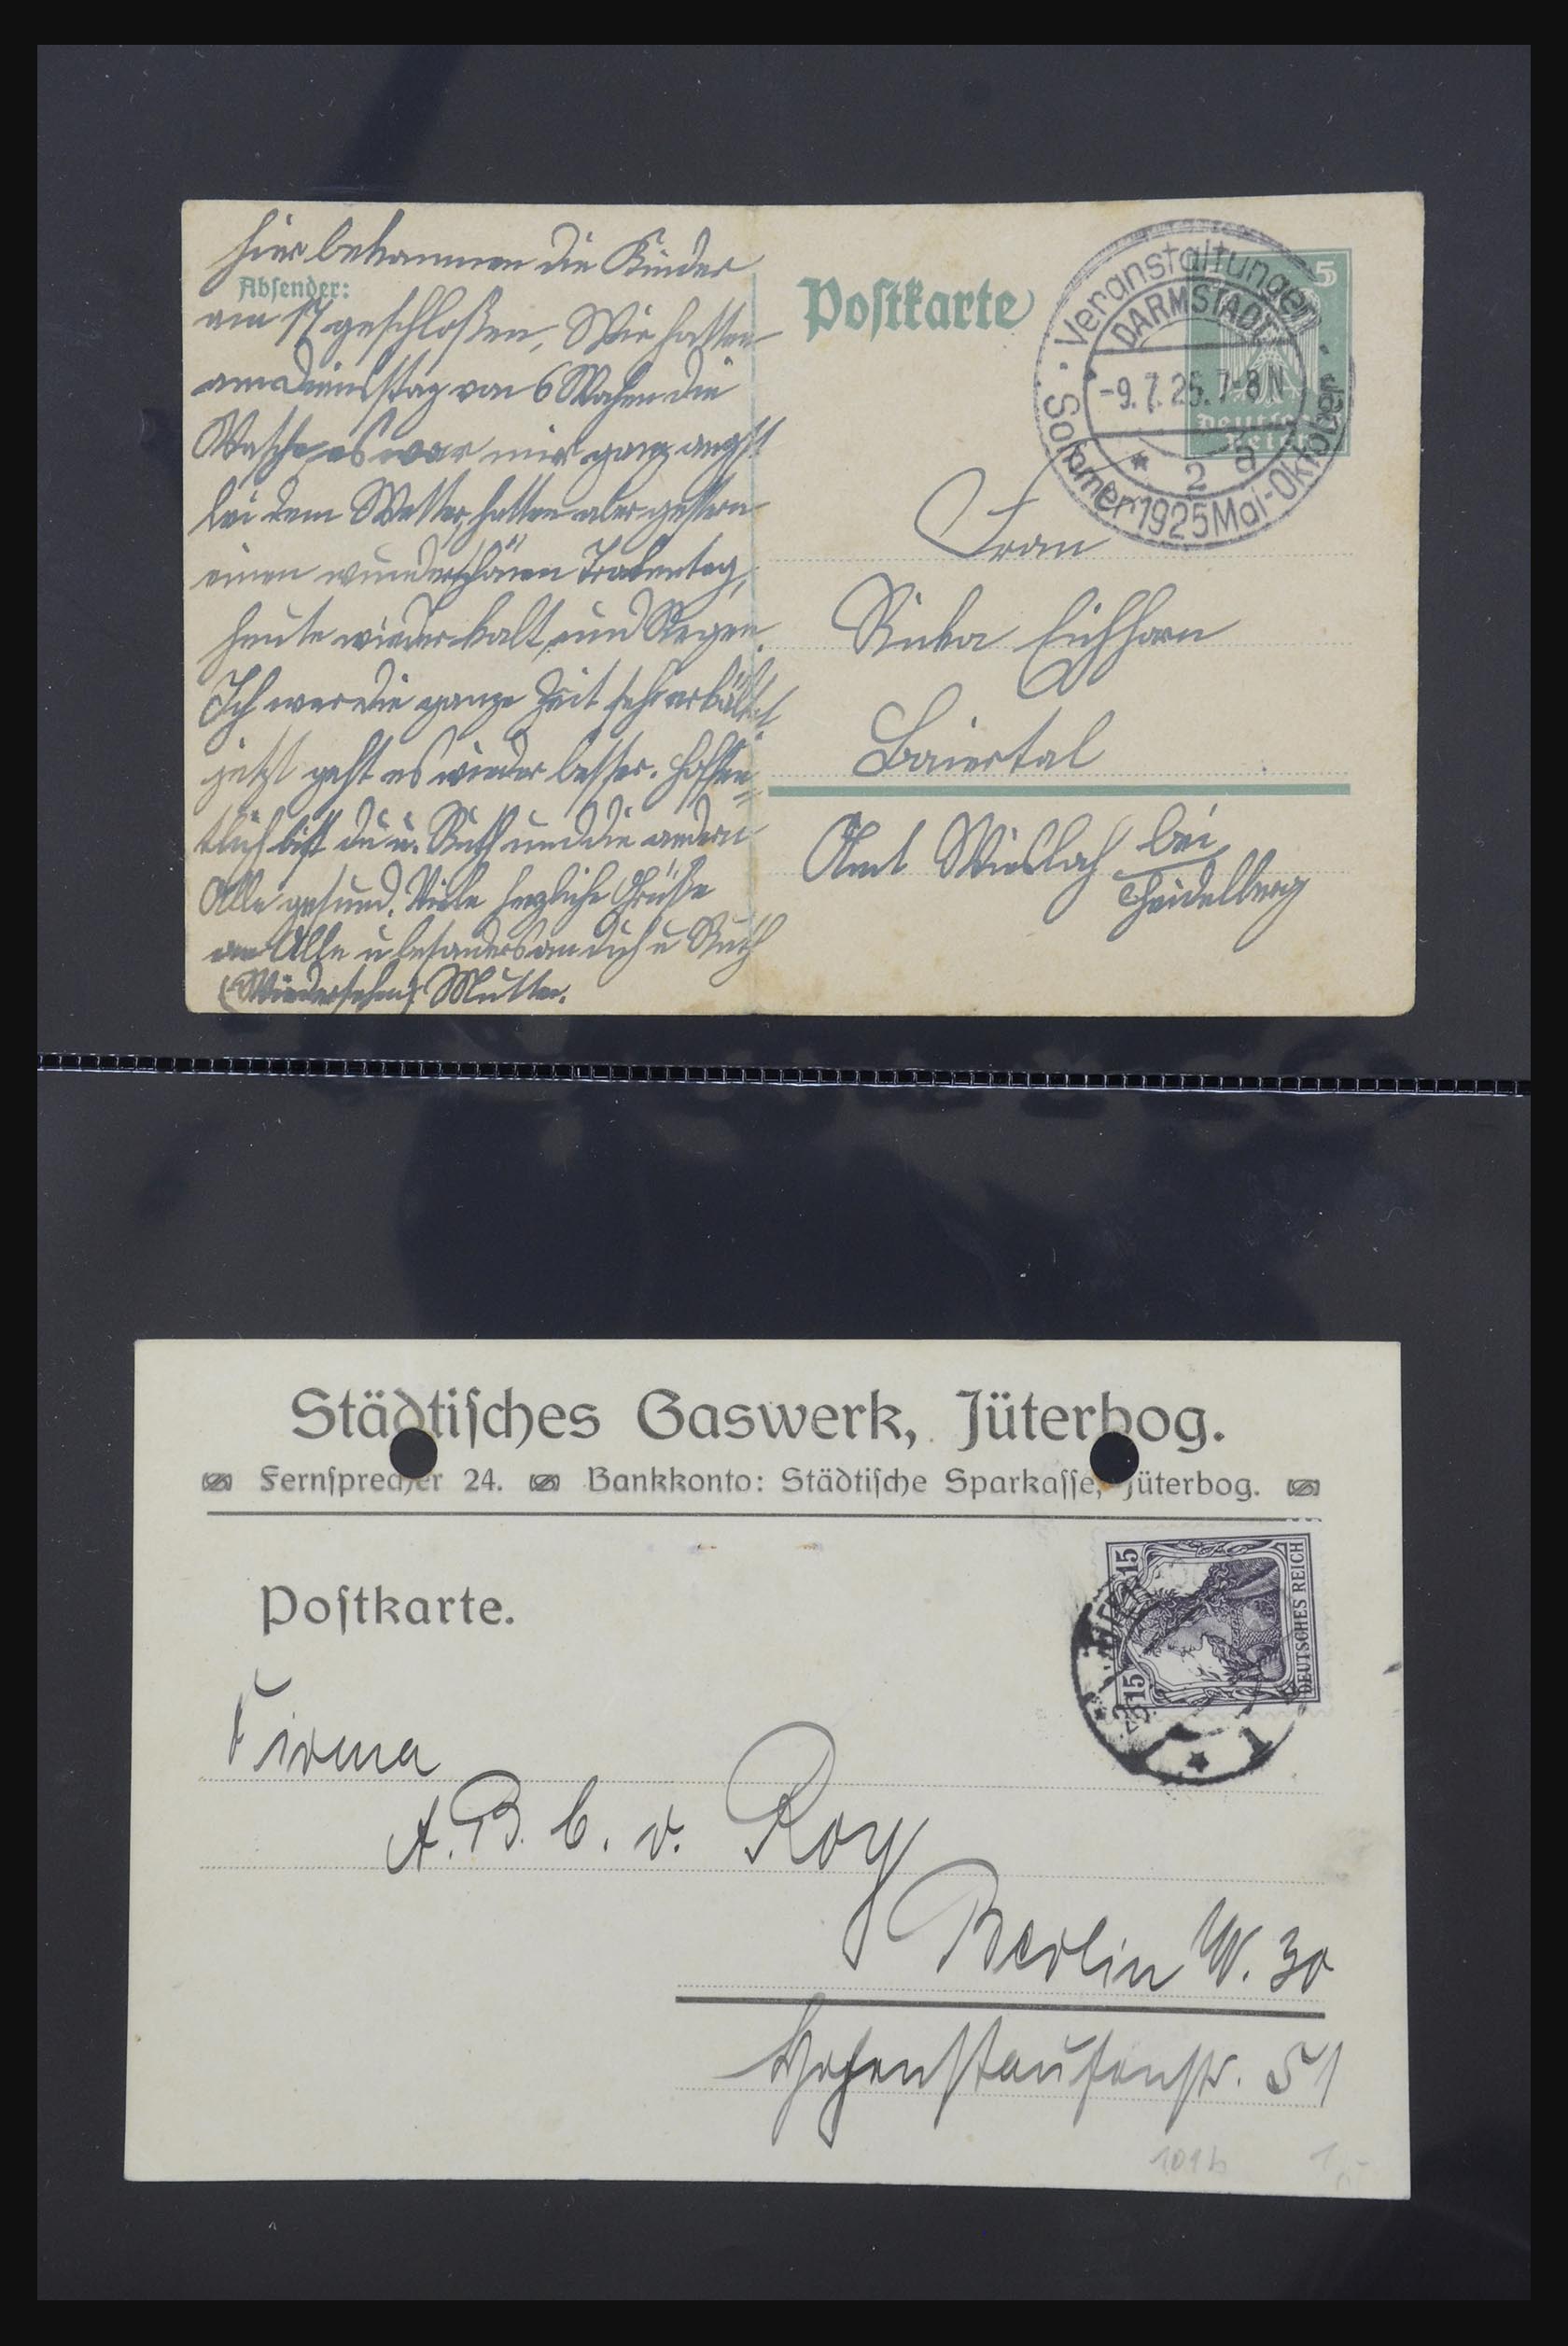 31952 427 - 31952 German Reich cards.